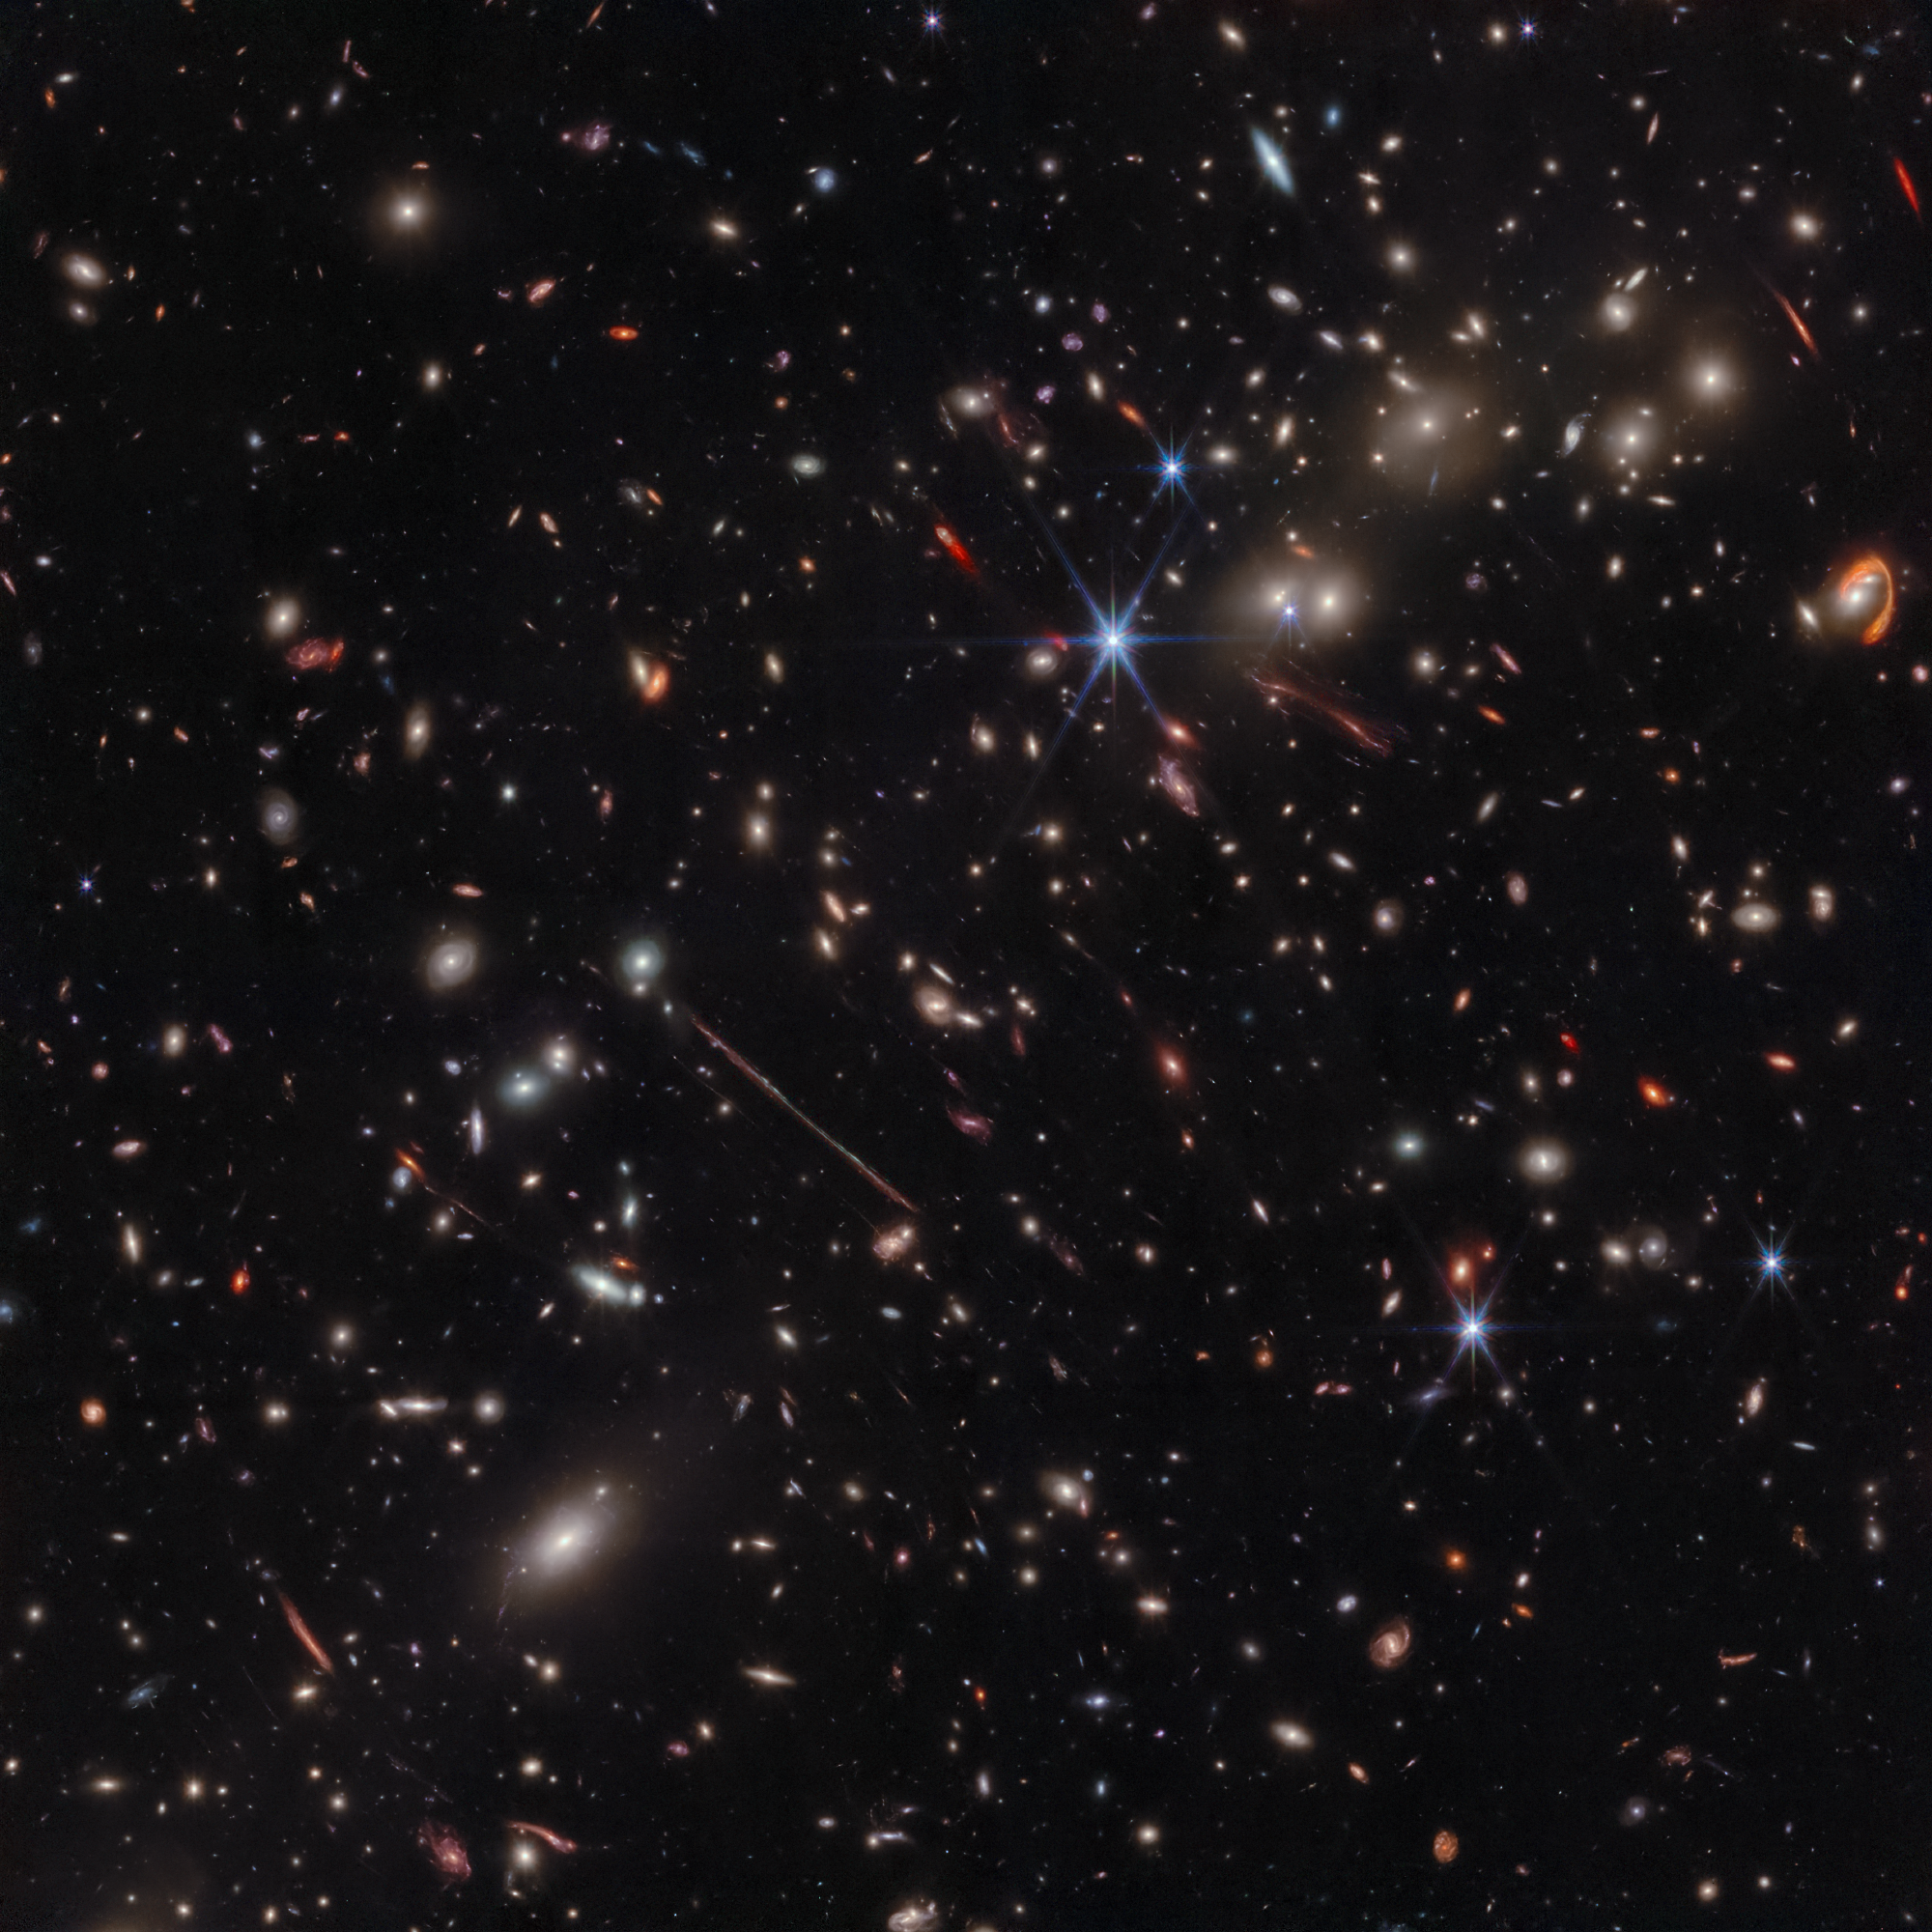 webb image of el gordo galaxy cluster